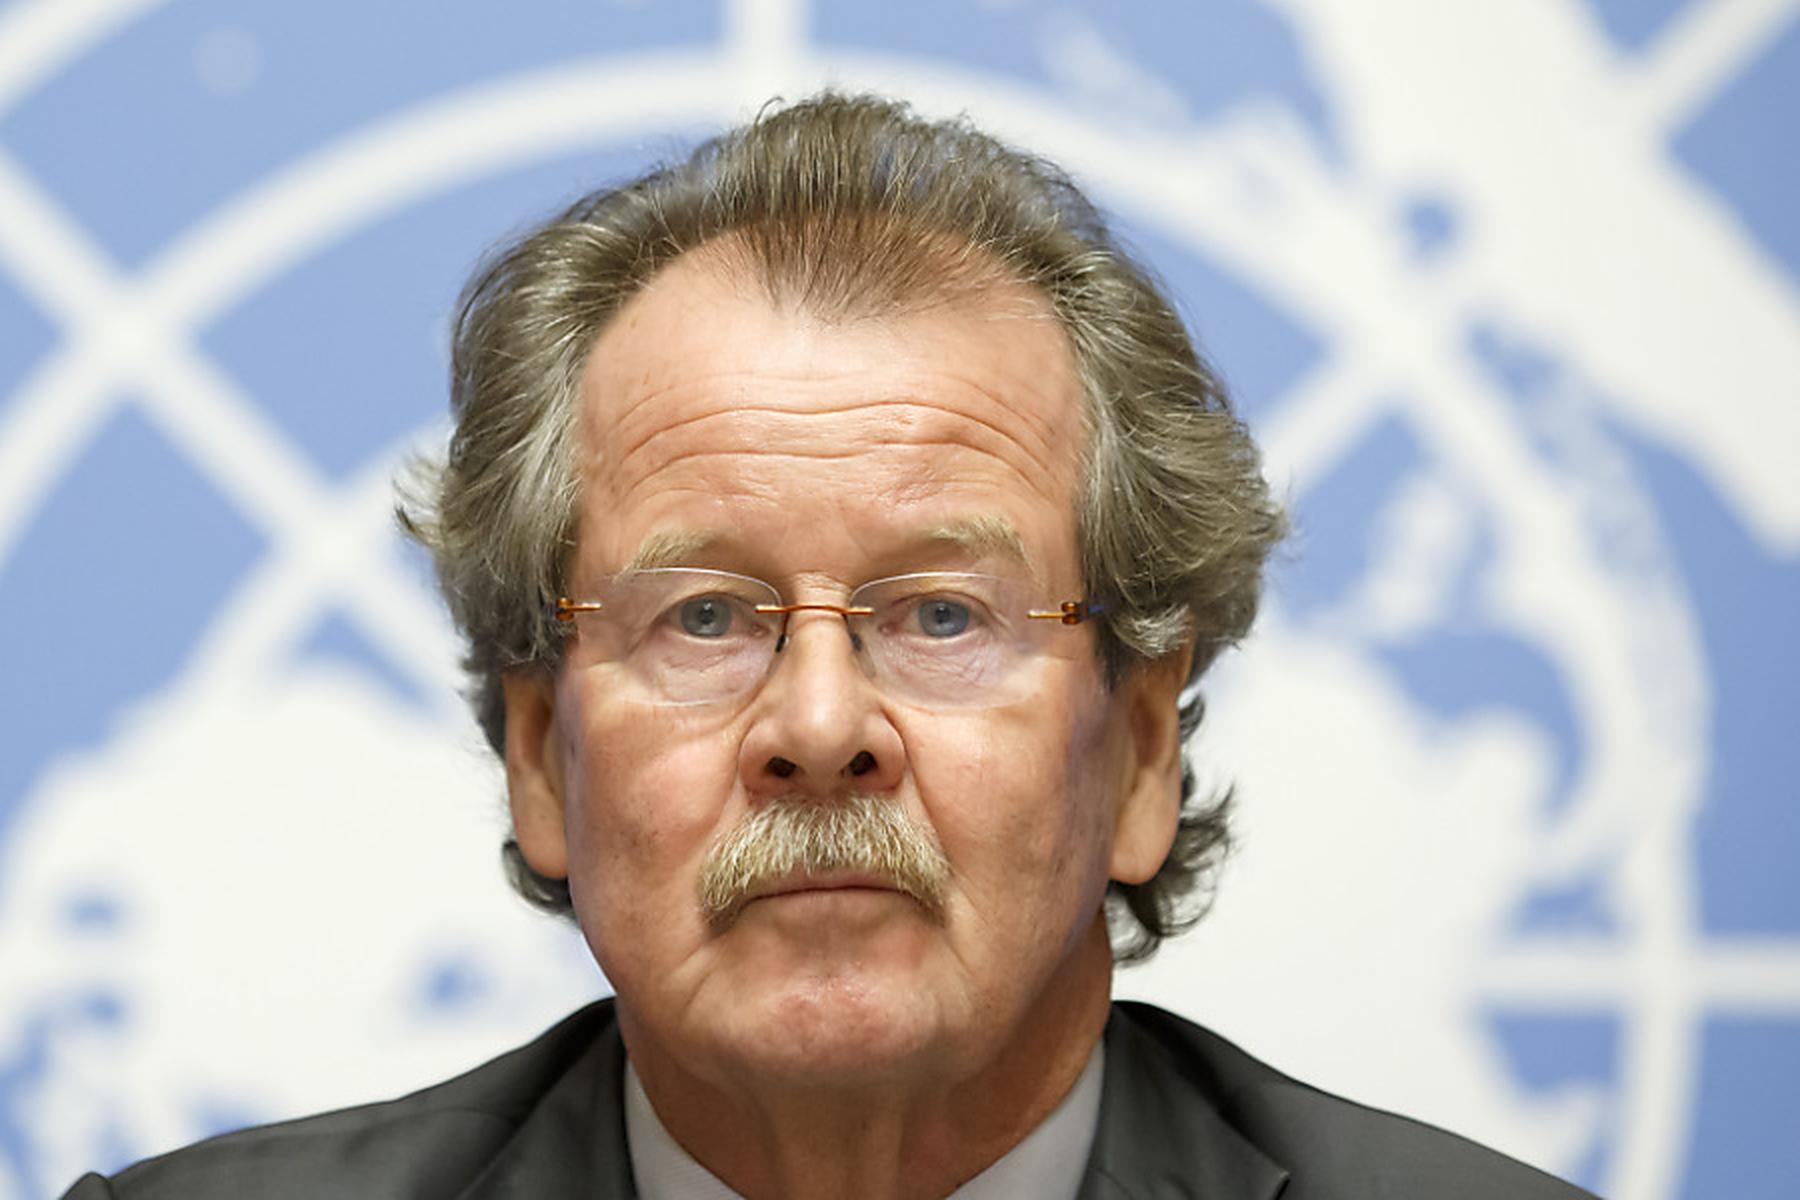 Neuer Menschenrechtskommissar | Wiener Manfred Nowak gescheitert: „Das Leben geht ganz normal weiter“